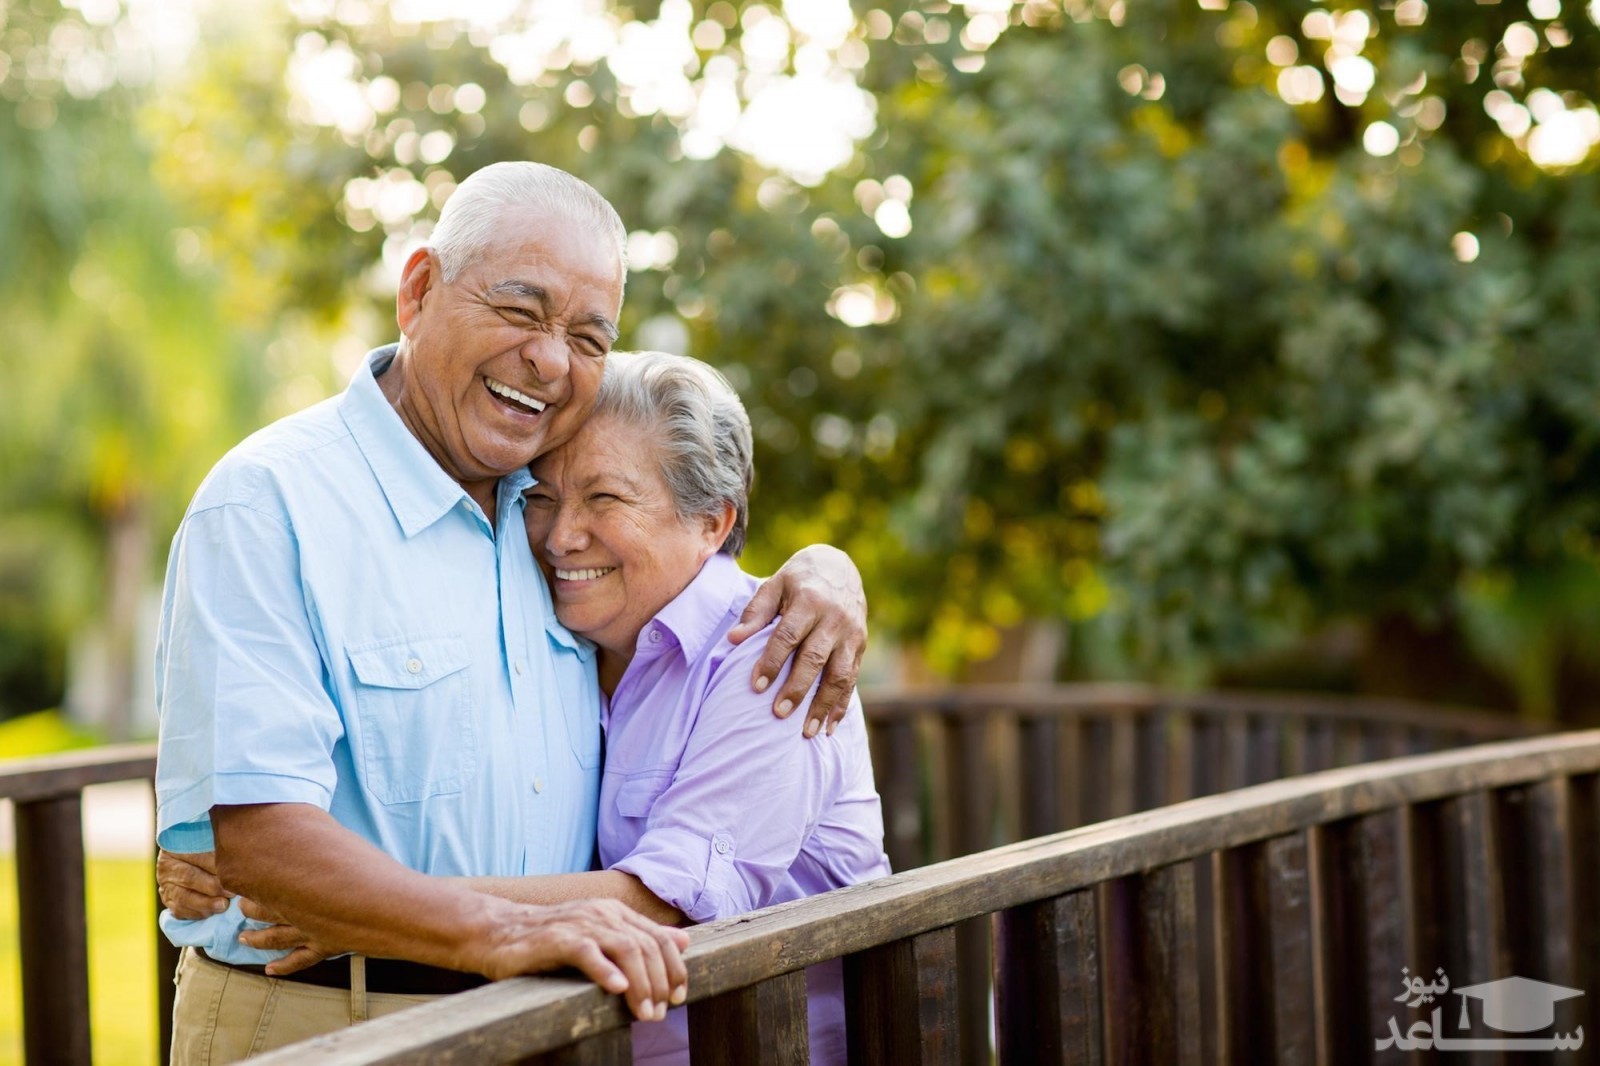 زوج های سالمند چه انتظاراتی از یکدیگر دارند؟